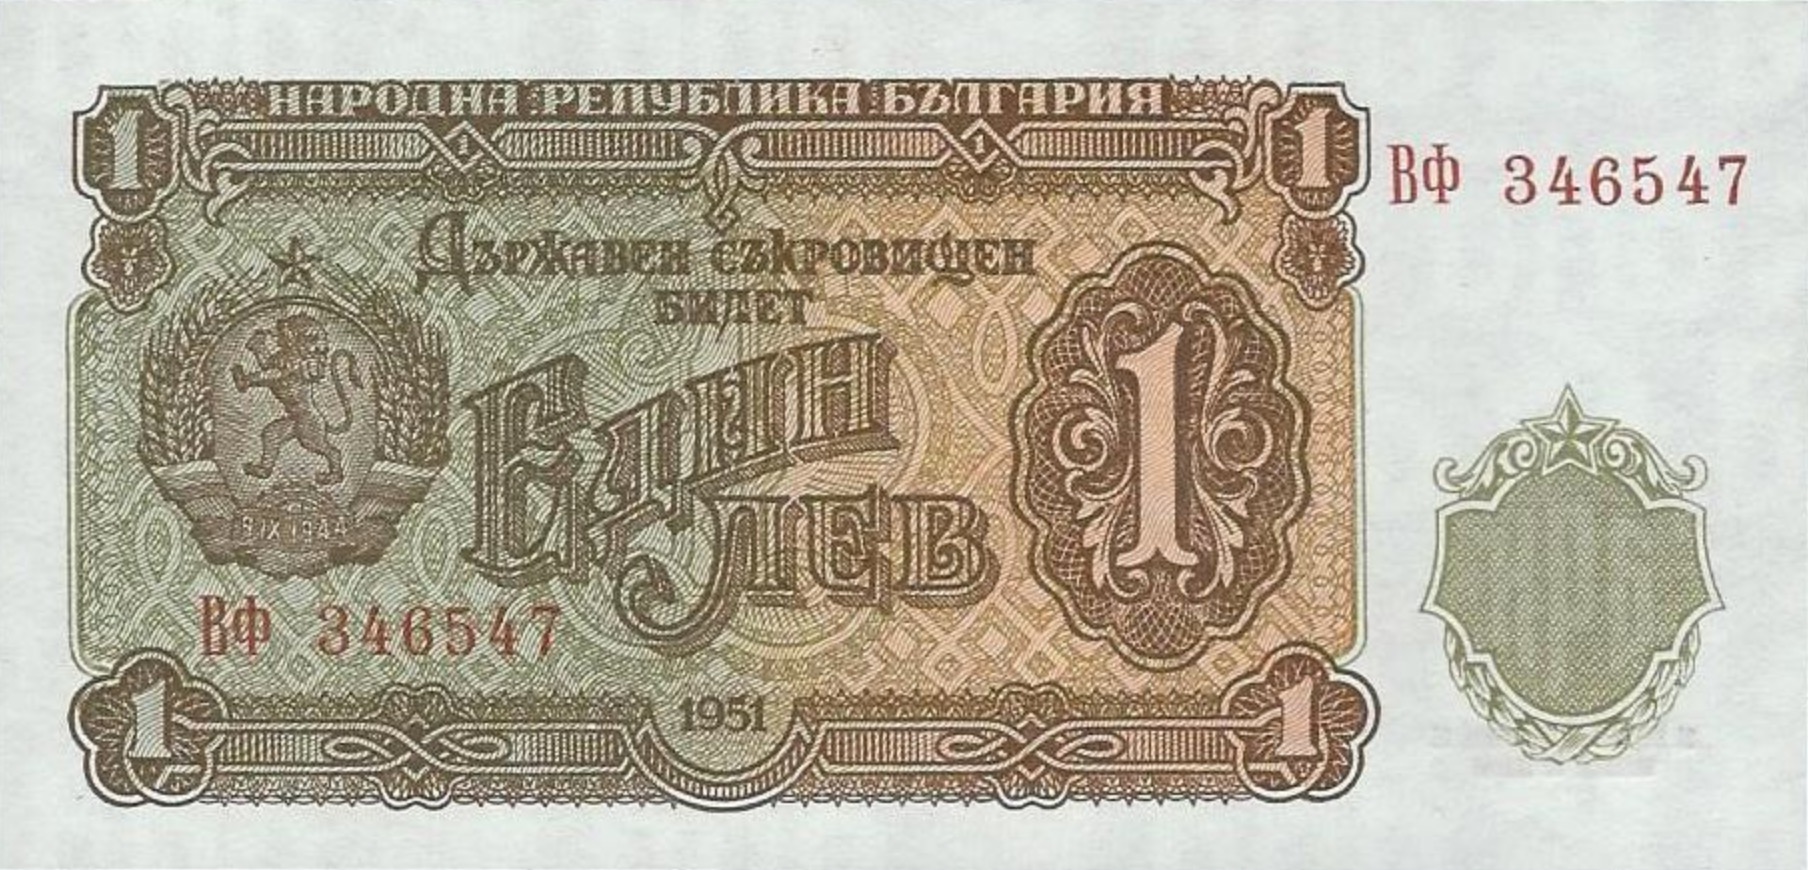 Details about   BULGARIA 1 Lev 1999 P114 UNC Banknote 